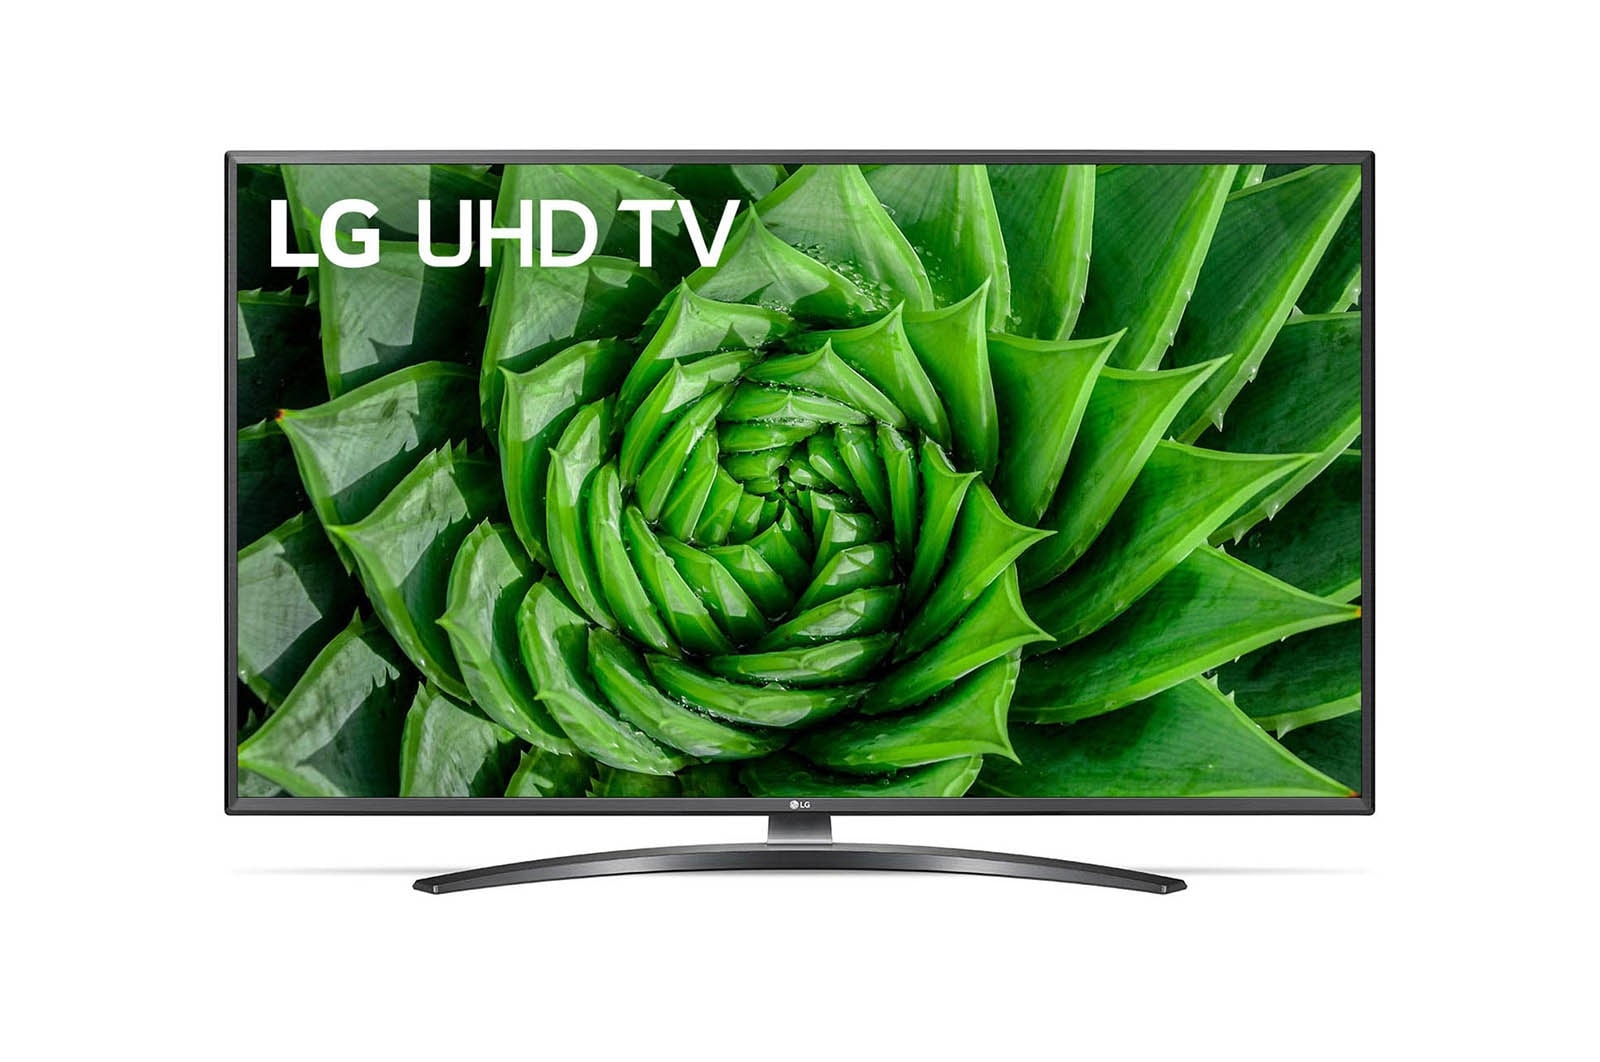 LG 50V型 液晶テレビ 50UK6400EJC 4K HDR対応-